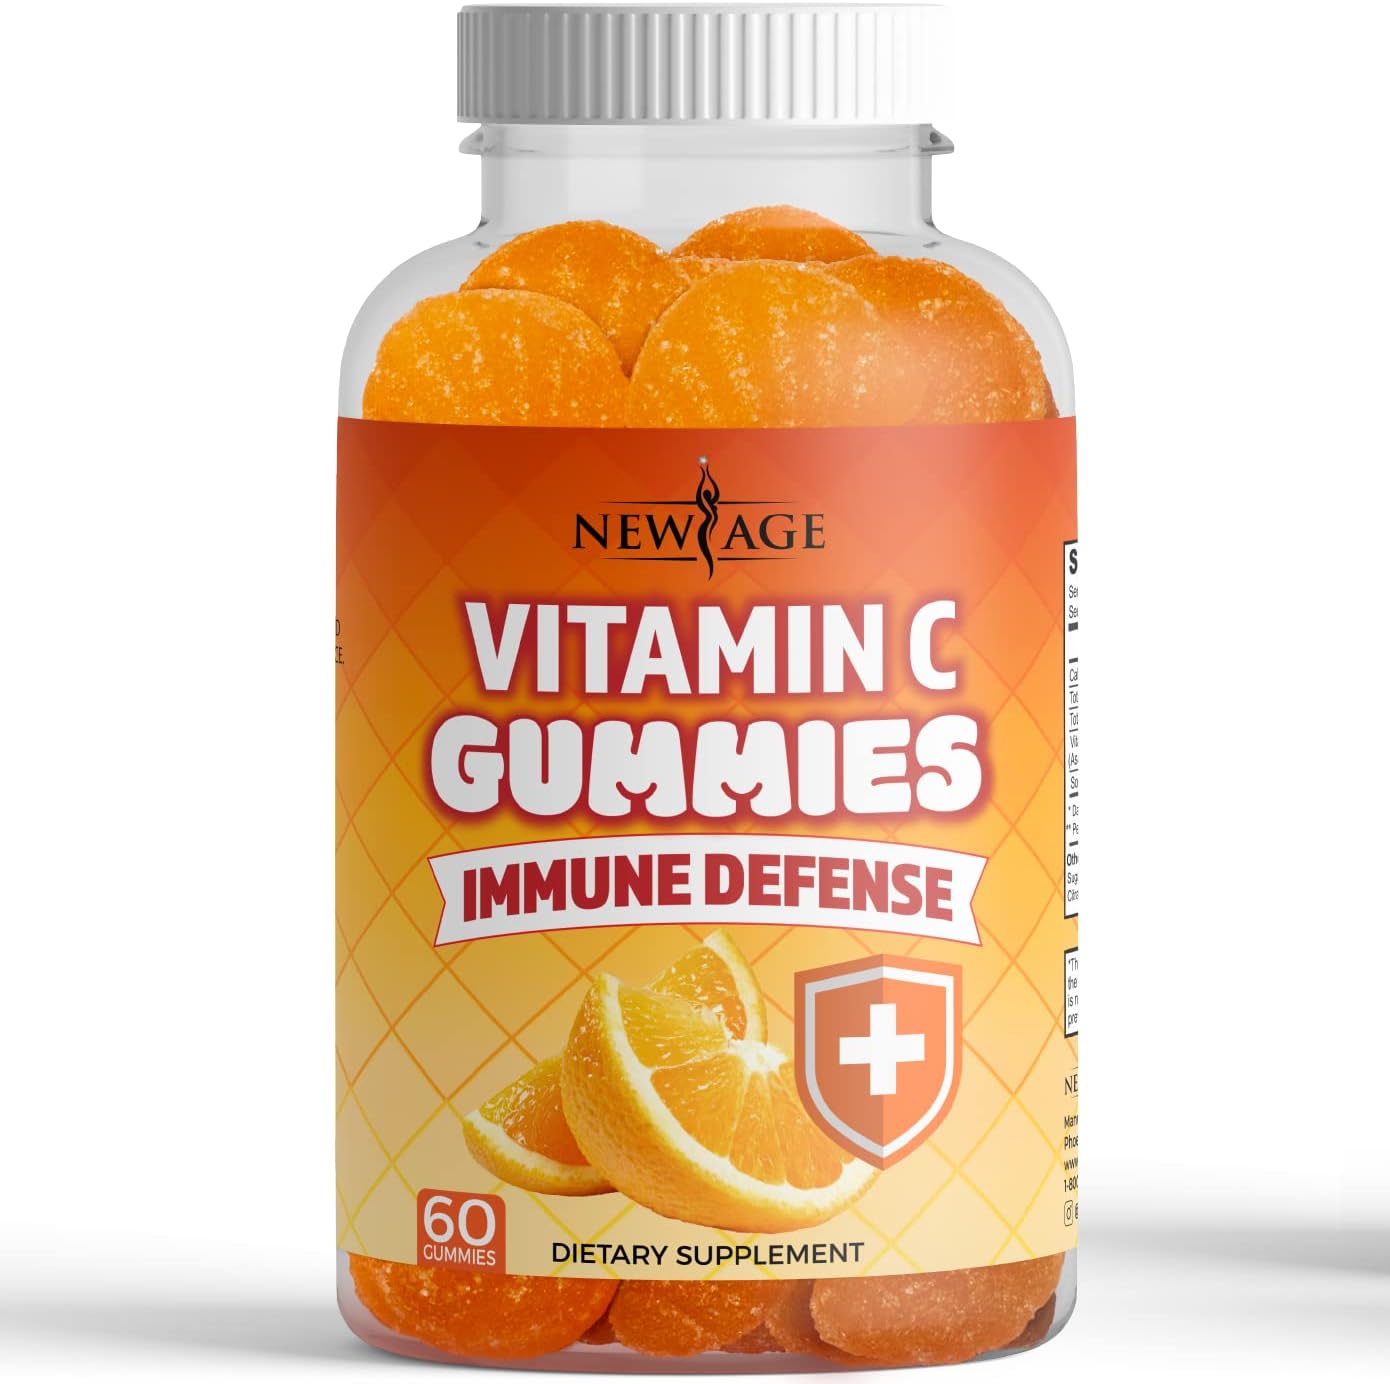 NEW AGE Vitamin C Gummies Orange Vitamin C Gummy - Supports Healthy Immune System - Vegetarian Without Gluten (60 Gummies)